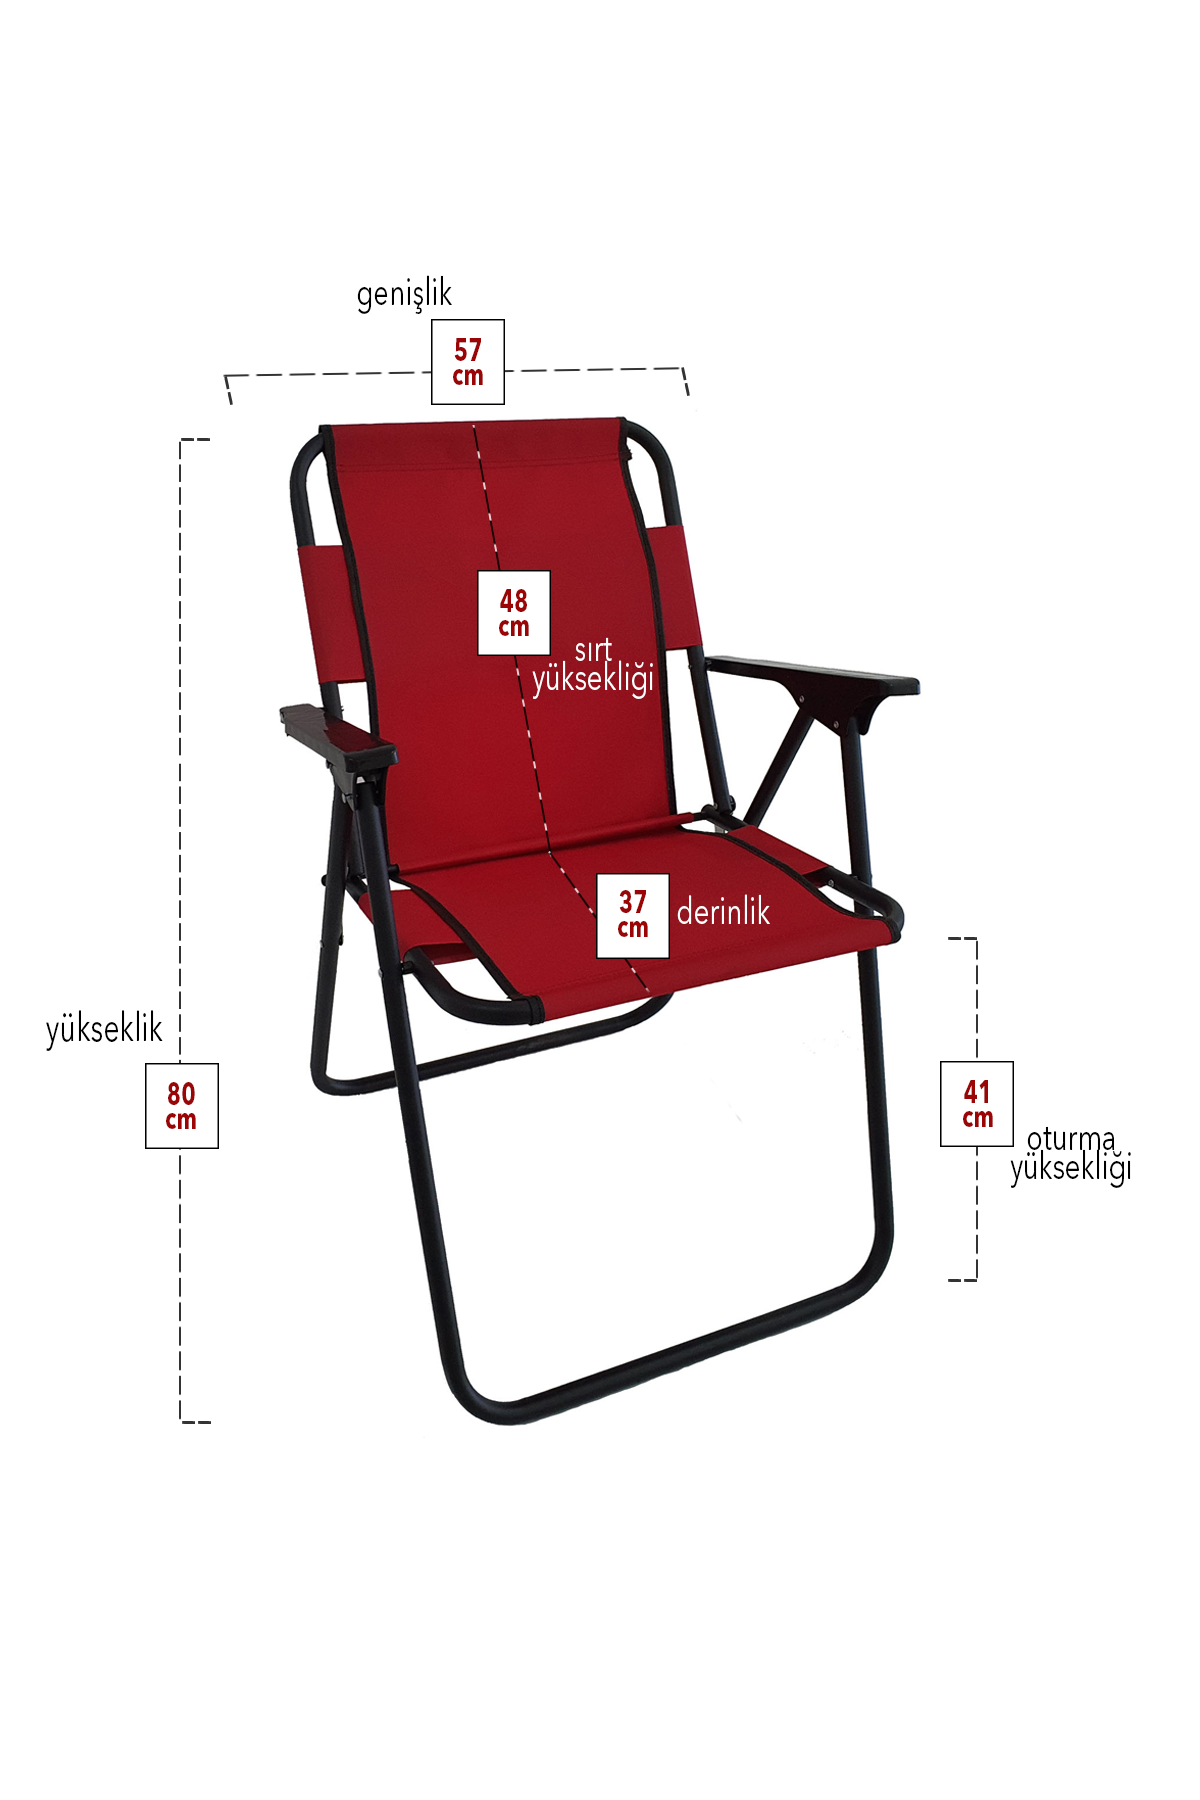 Bofigo 4 Pcs Camping Chair Folding Chair Picnic Chair Beach Chair Red